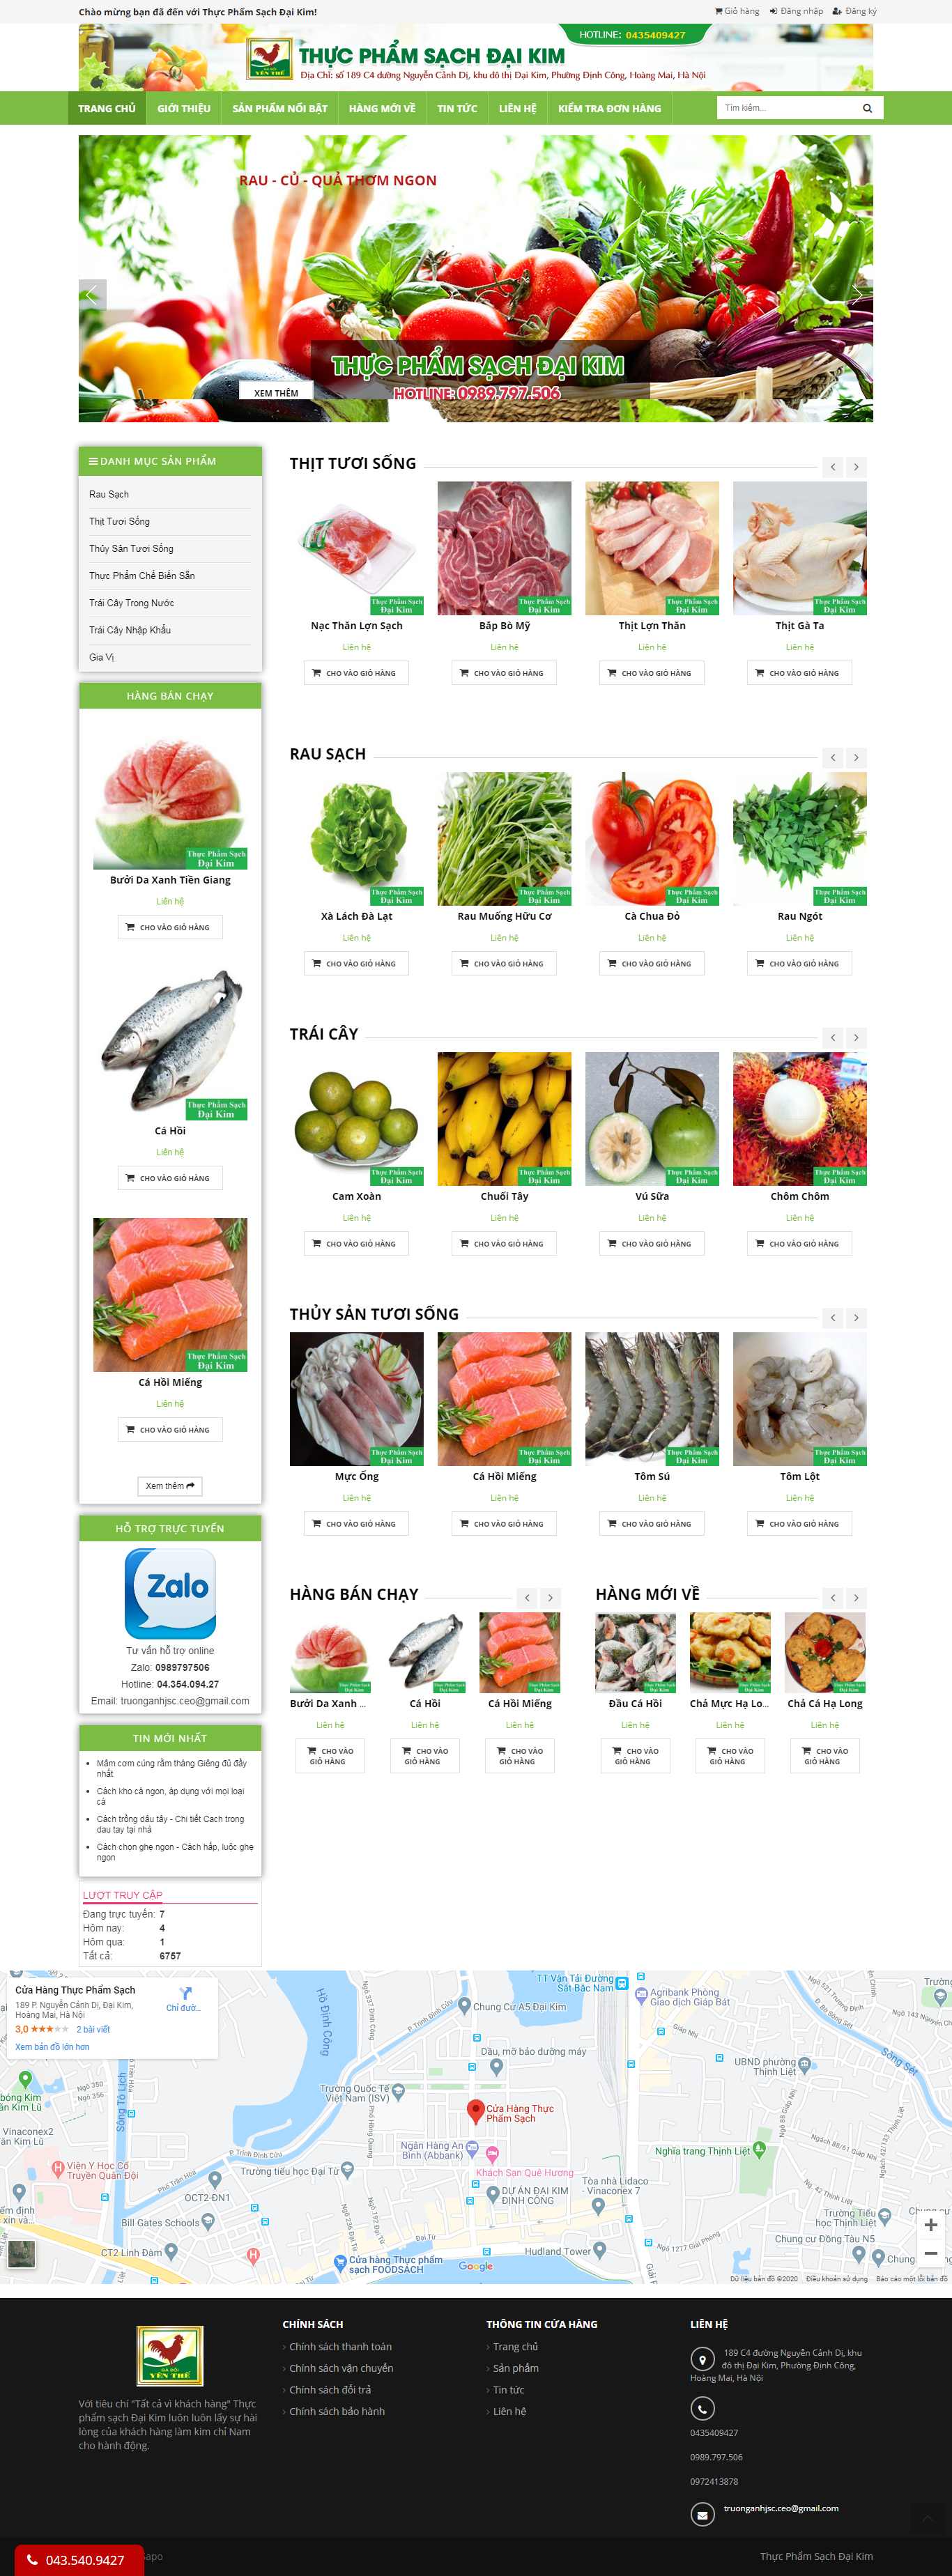 Thiết kế Website kinh doanh thực phẩm sạch - thucphamsachdaikim.com.vn